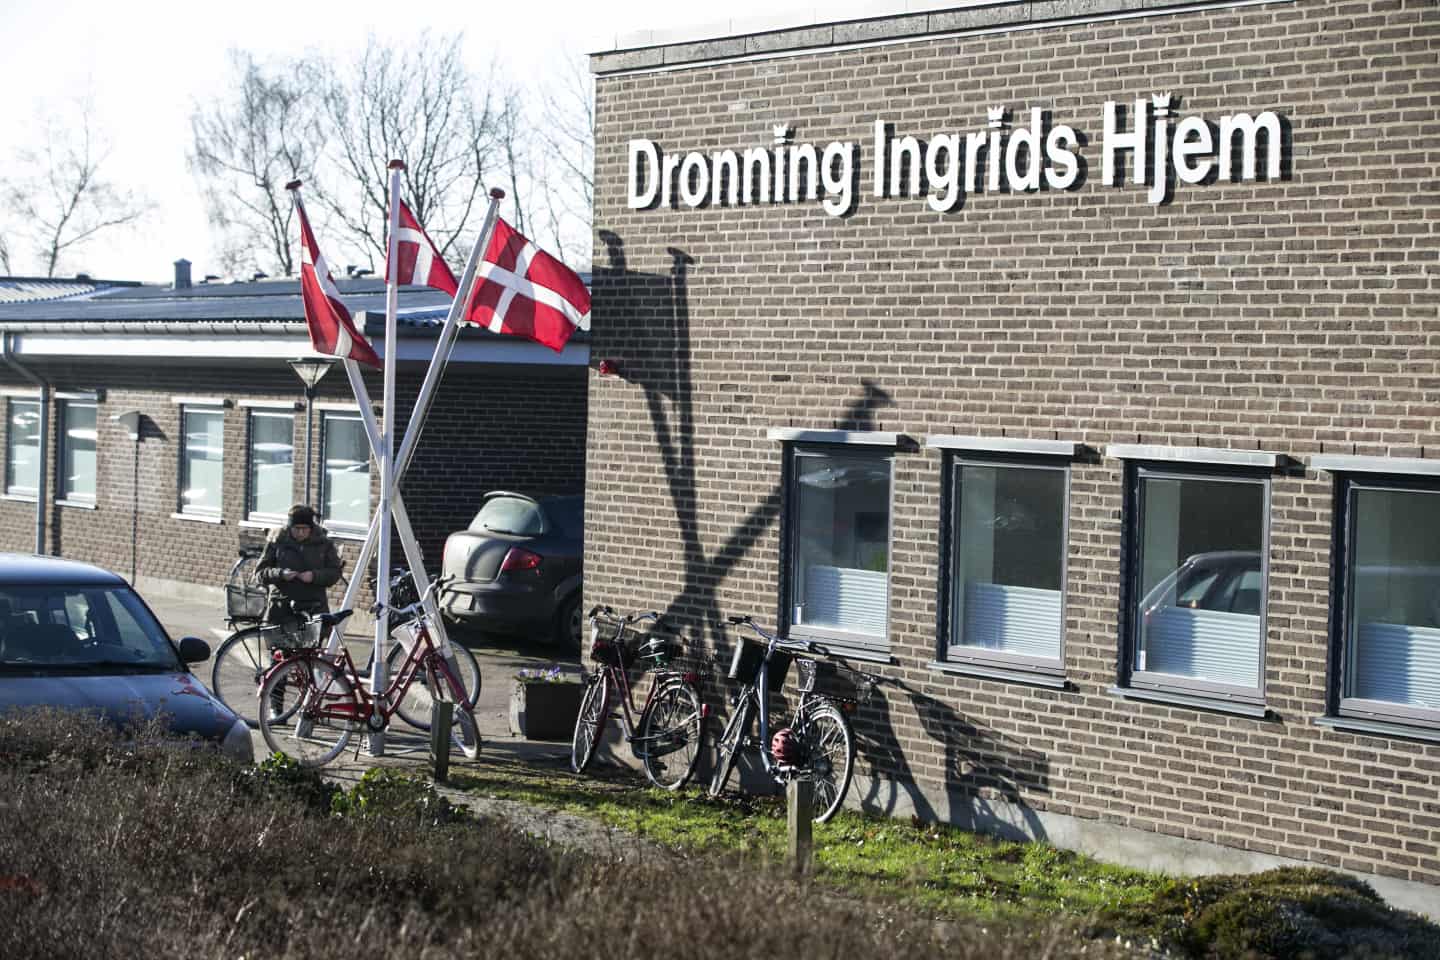 Dronning Ingrids skal være livskraftcenter for ældre | hsfo.dk